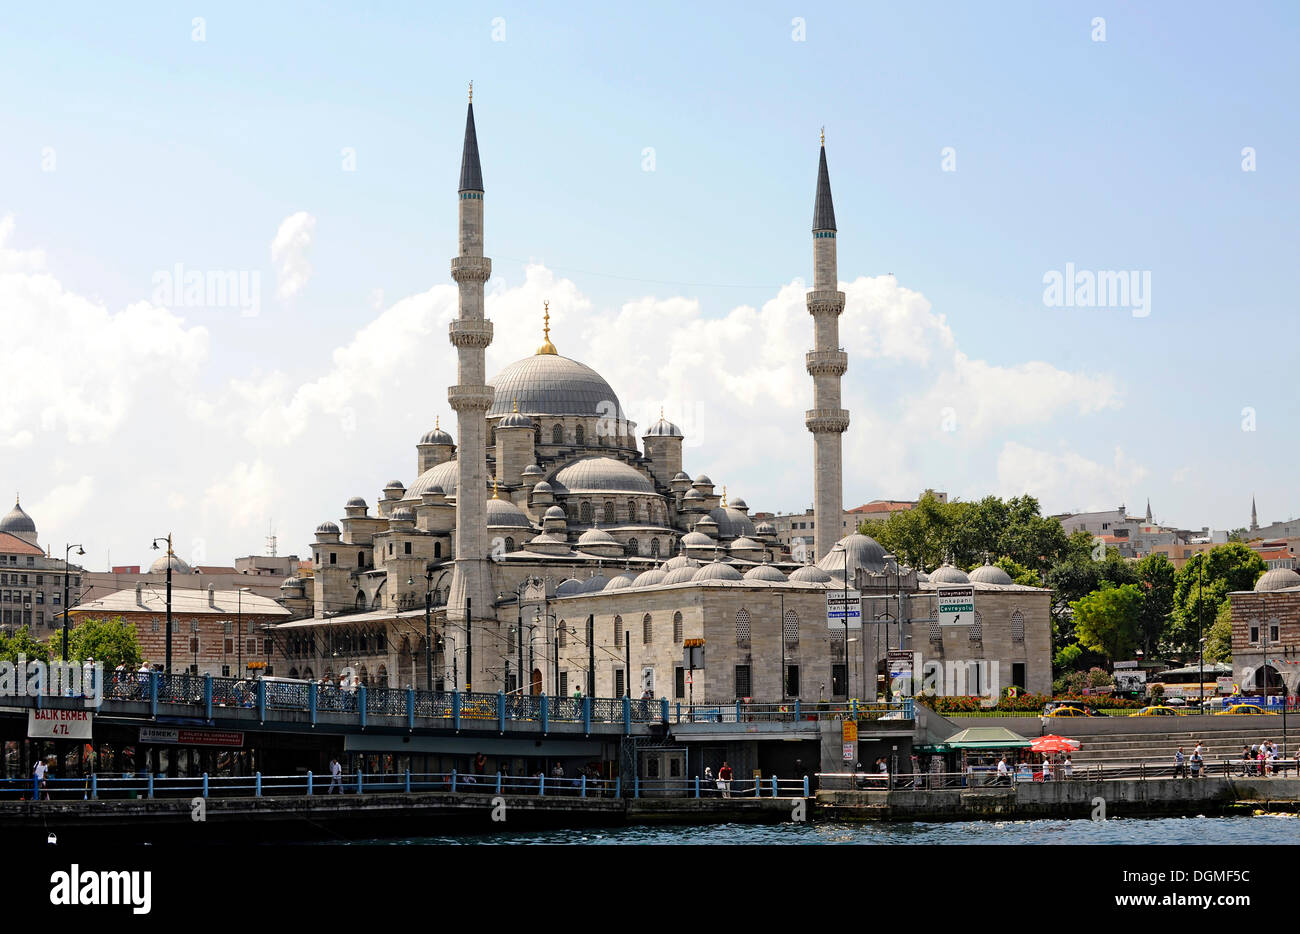 Yeni Cami o Nuova Moschea, e il Ponte Galata o Koepruesue Galata, Golden Horn, Halic, sul Bosforo, Bogazici, Istanbul, Turchia Foto Stock